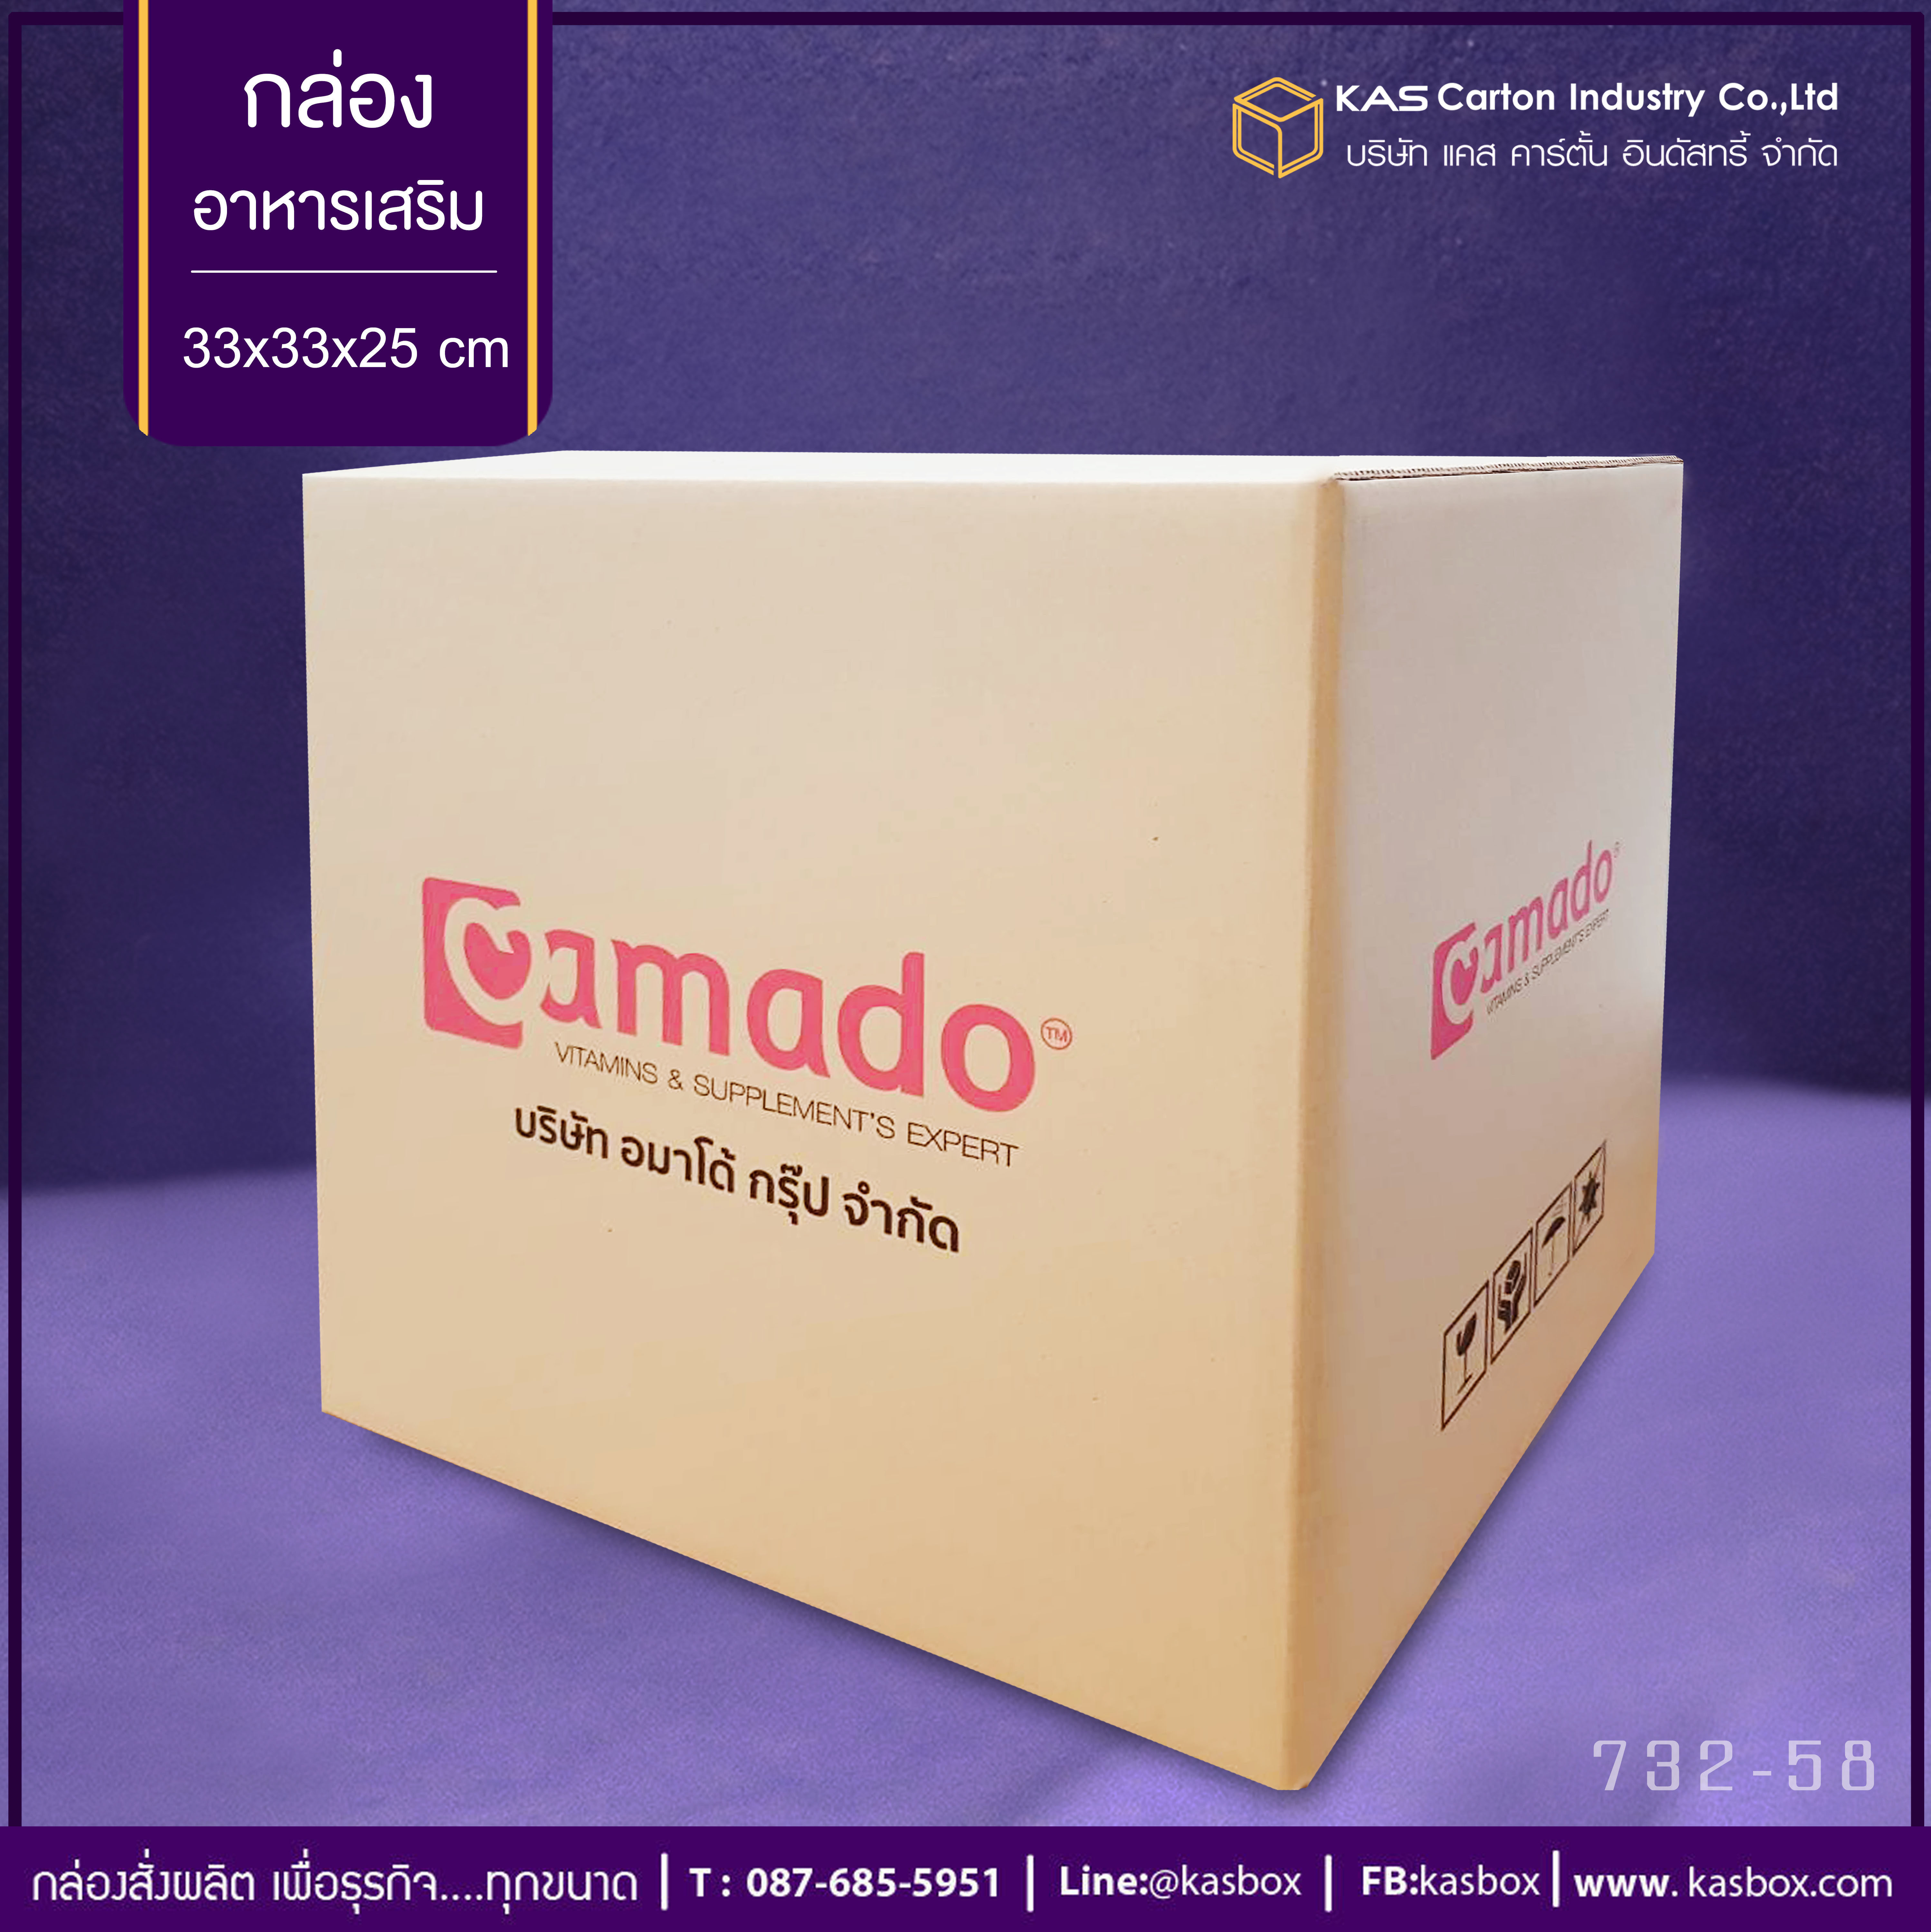 กล่องอาหารเสริม Brand AMADO บรรจุ 48 ชิ้นขนาด 33x33x25 cm.รูปแบบกล่องฝาชนกล่องหนา 5 ชั้น ลอน BC สีกล่อง ด้านนอก125Ki/ด้านใน125Caพิมพ์ 2 สี 4 ด้านรหัสสินค้า 732-58